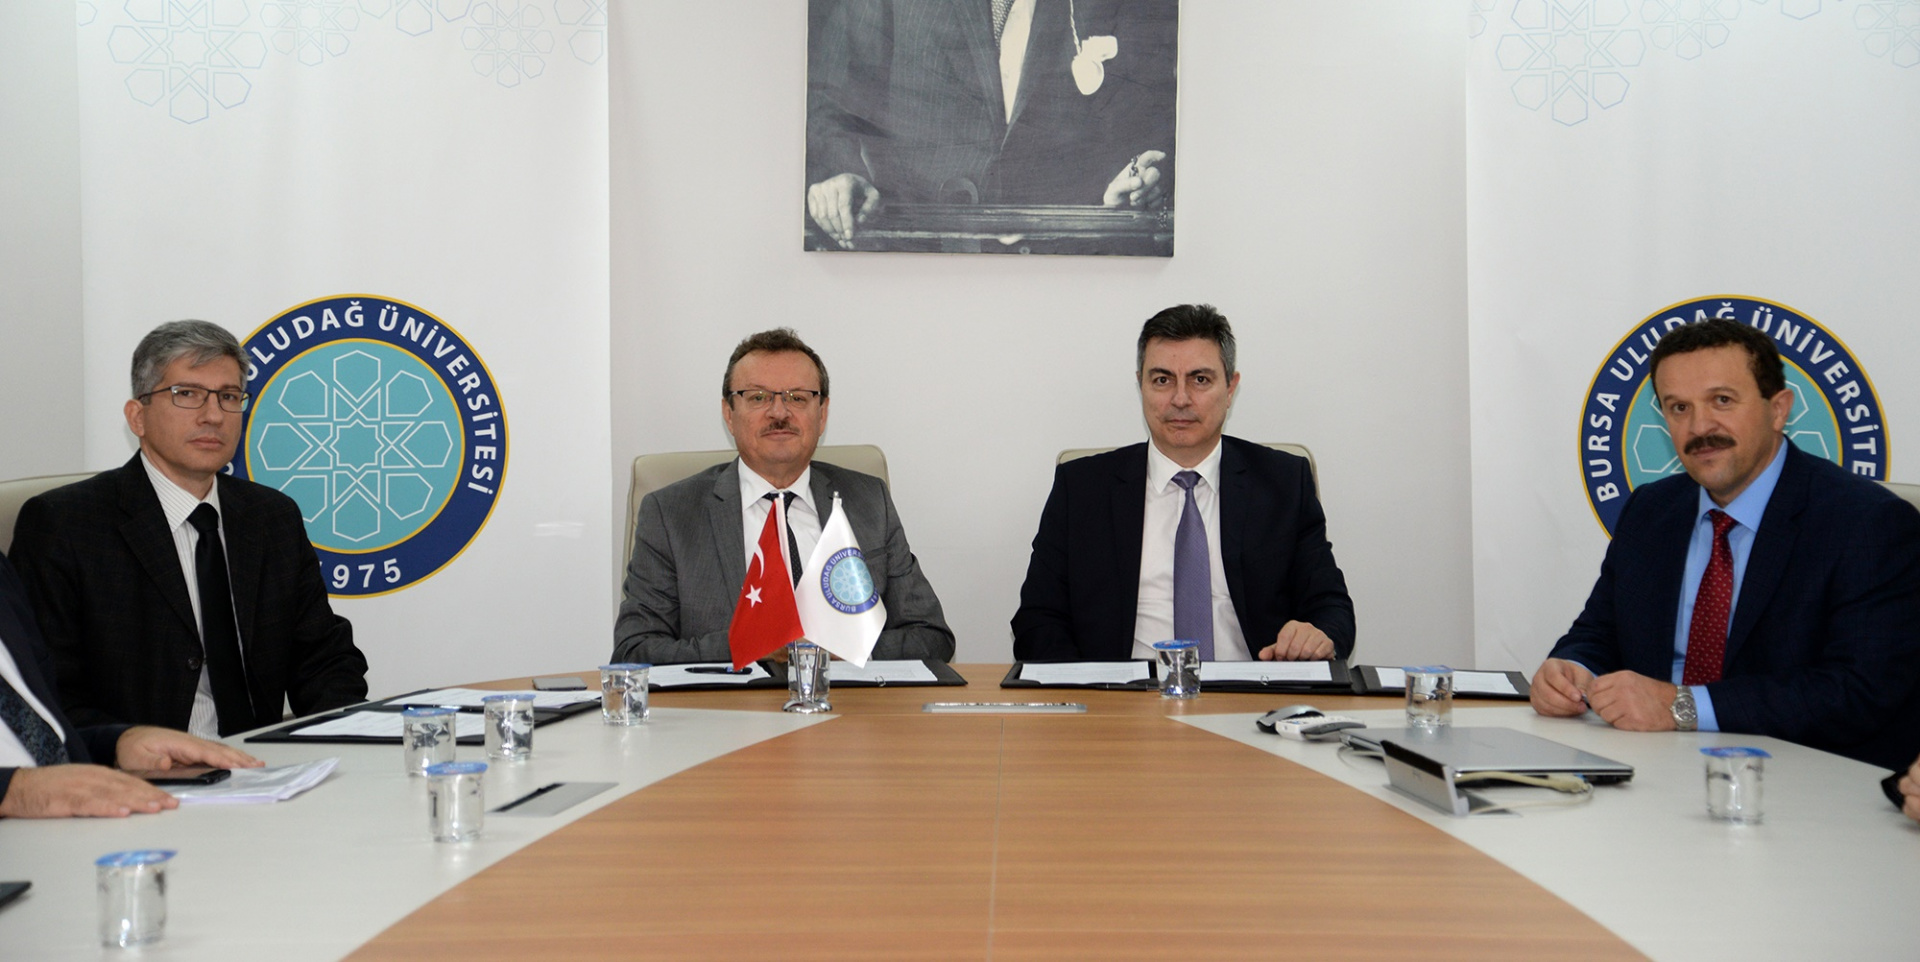  Bursa Uludağ Üniversitesi ile TOFAŞ arasında ‘Yazılım’ işbirliği  